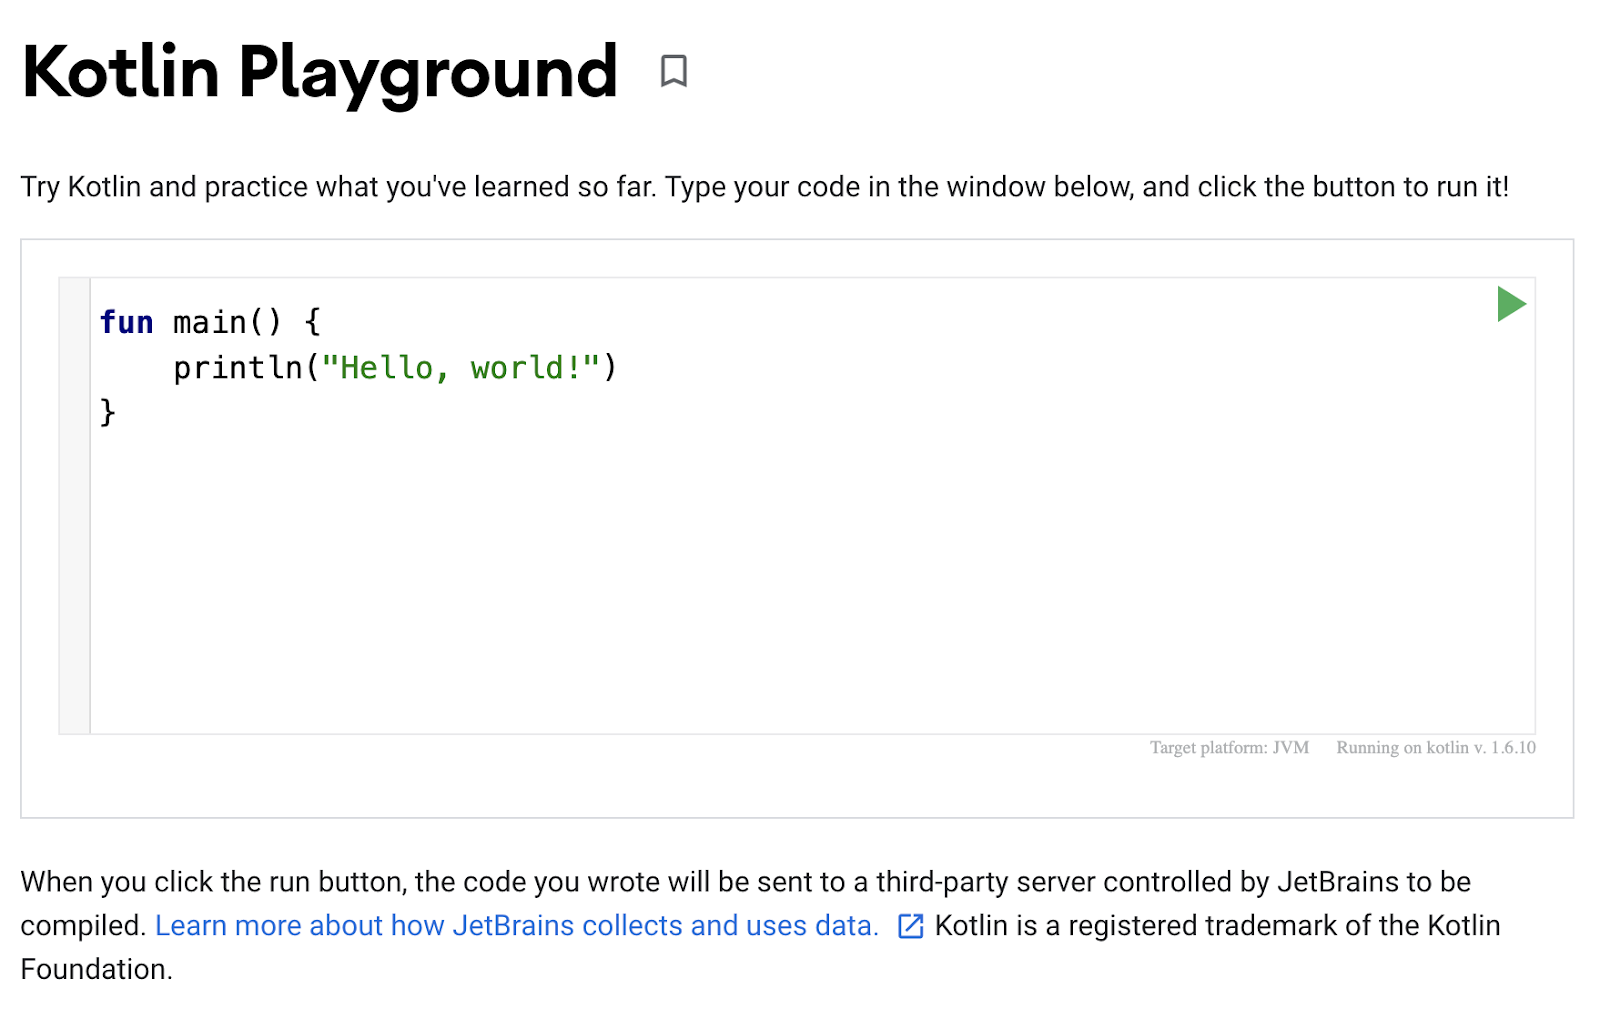 這顯示 Kotlin Playground 的螢幕截圖。程式碼編輯器會顯示一個簡單的程式，讓您將「Hello, world!」列印為輸出內容。